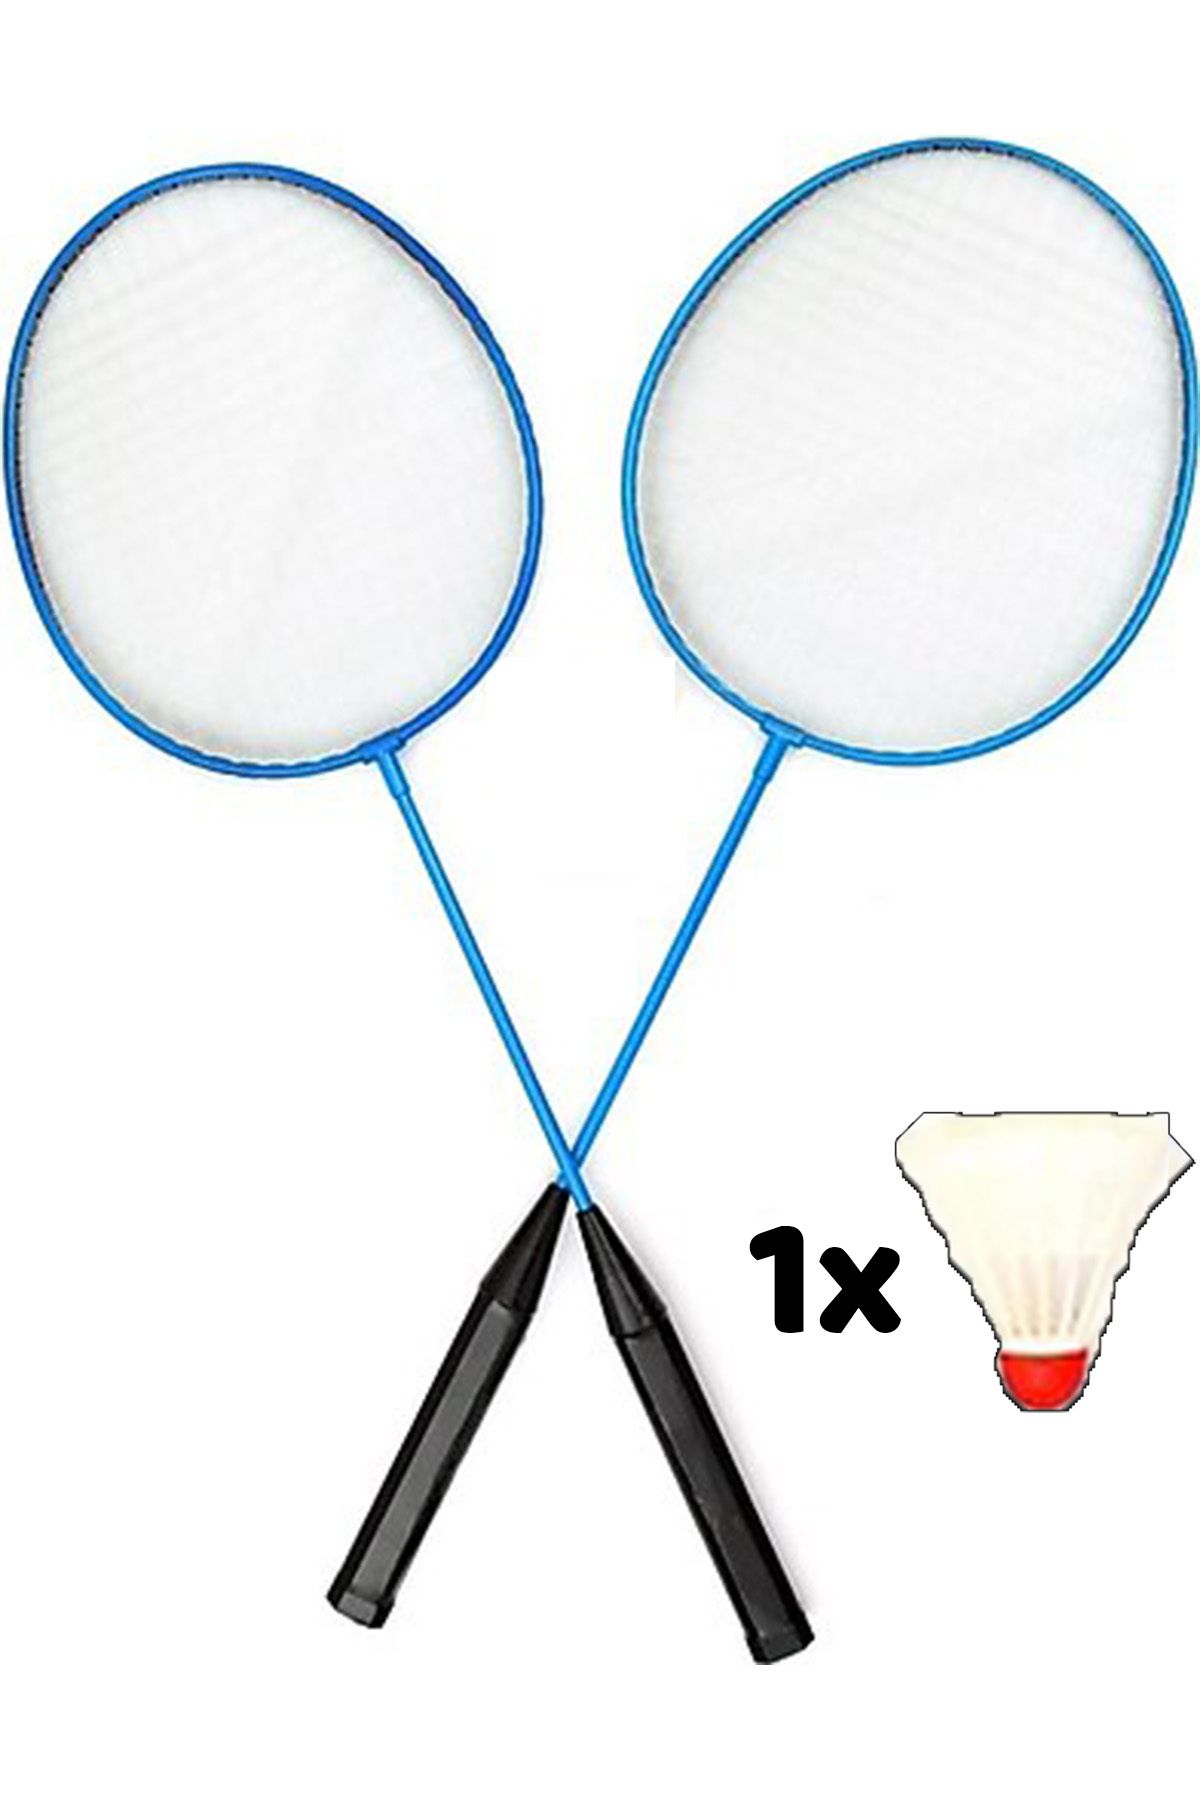 Genel Markalar 2 Adet Badminton Raketi Ve 1 Adet Top Hediyeli Badminton Seti Badminton Raket Ve Top Seti